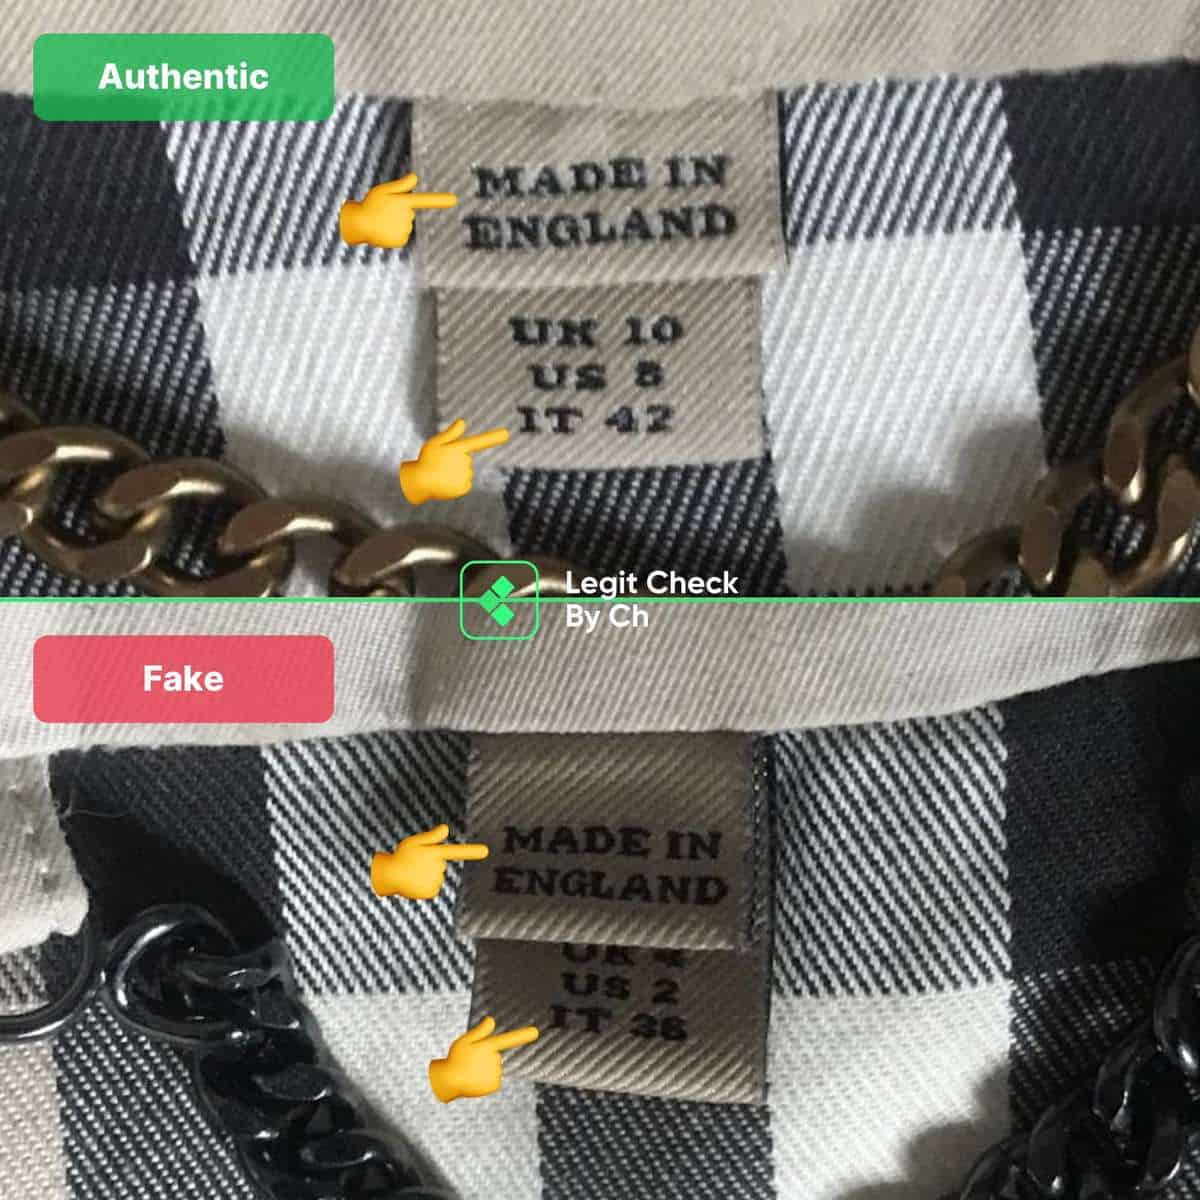 How To Spot A Fake Burberry Designer Handbag